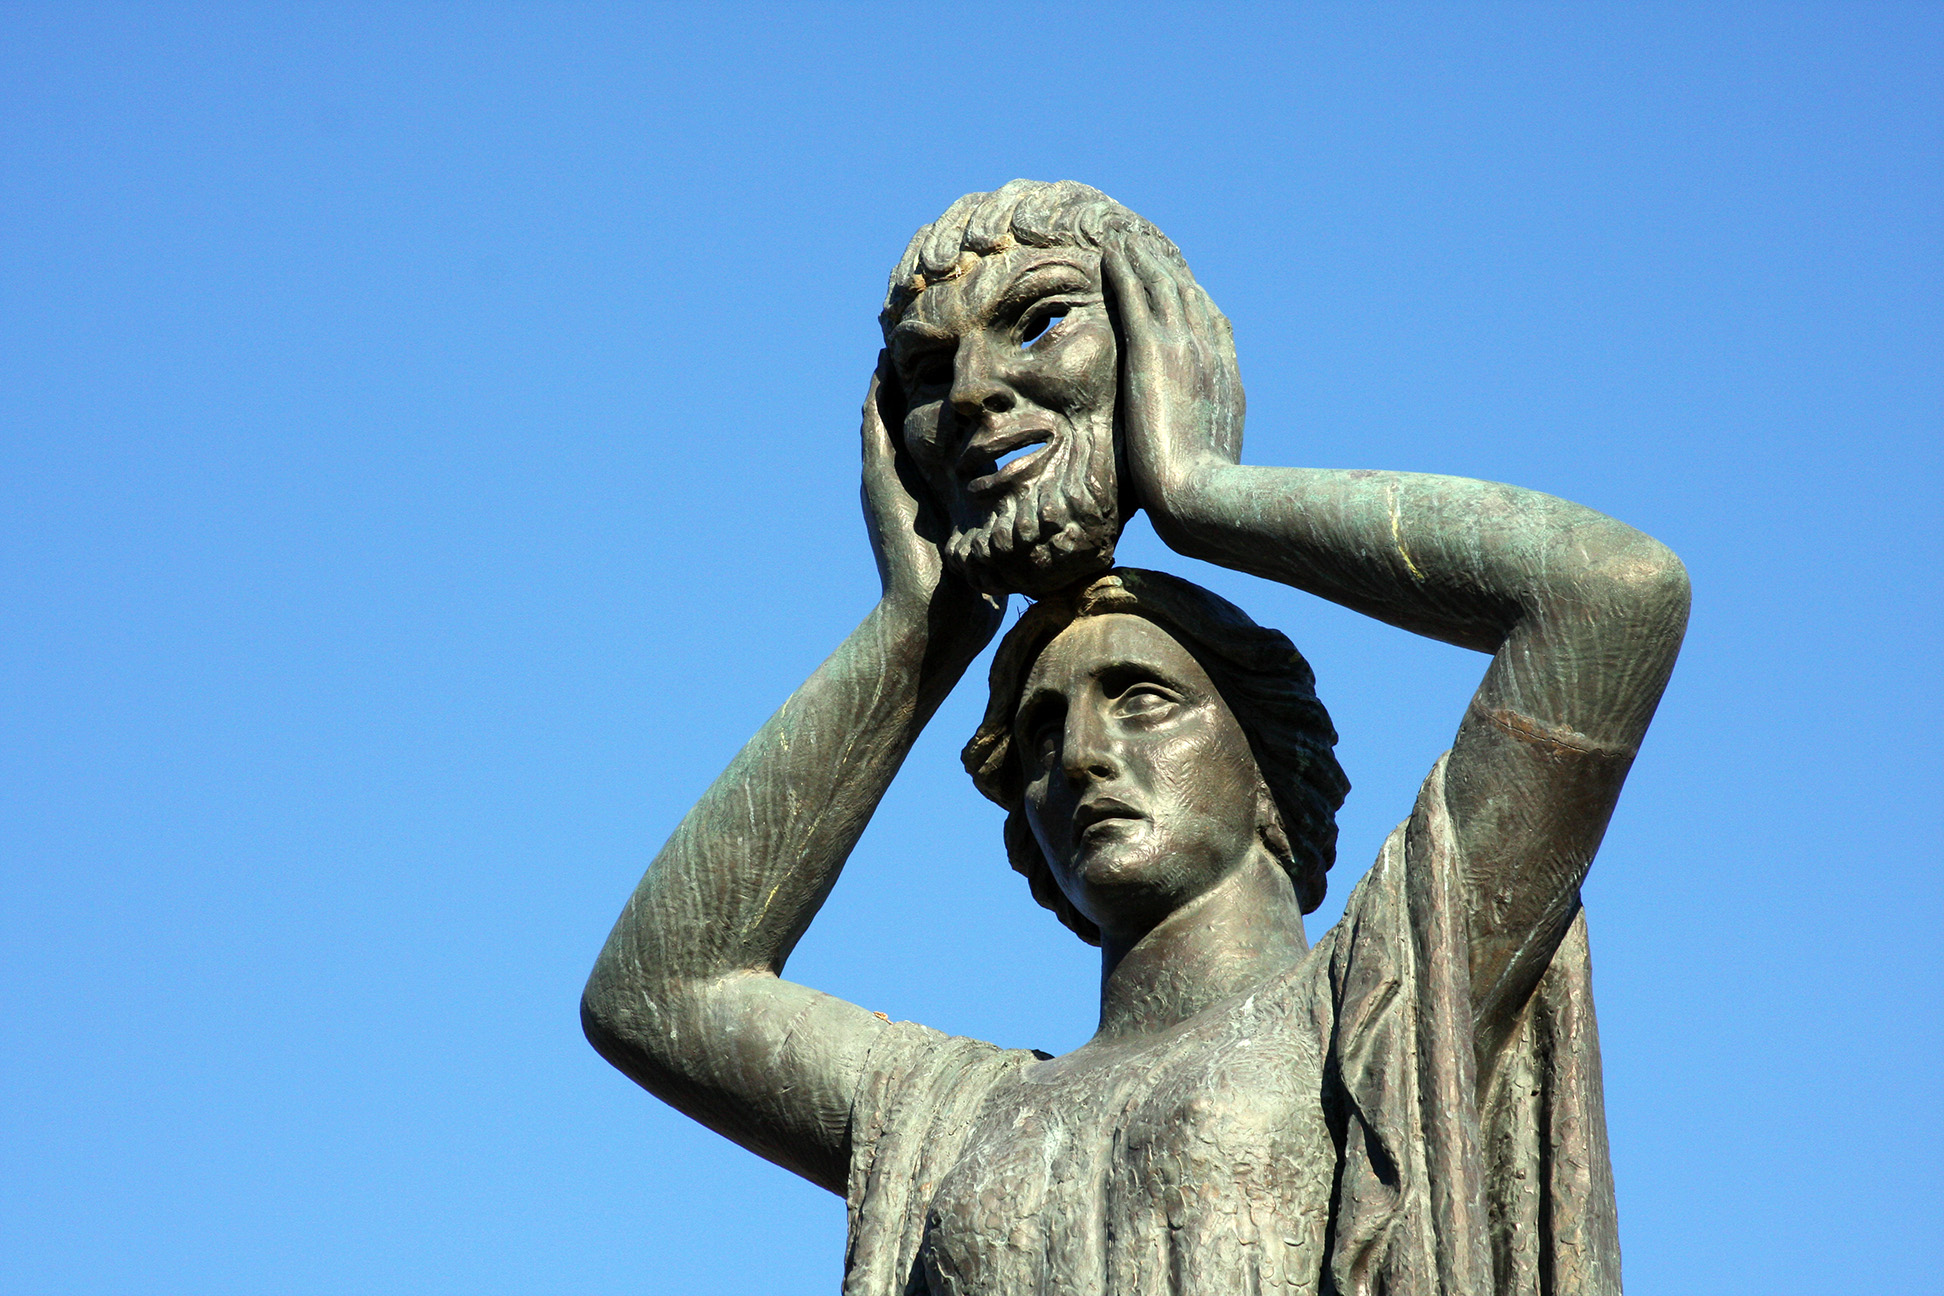 Statue against blight blue sky